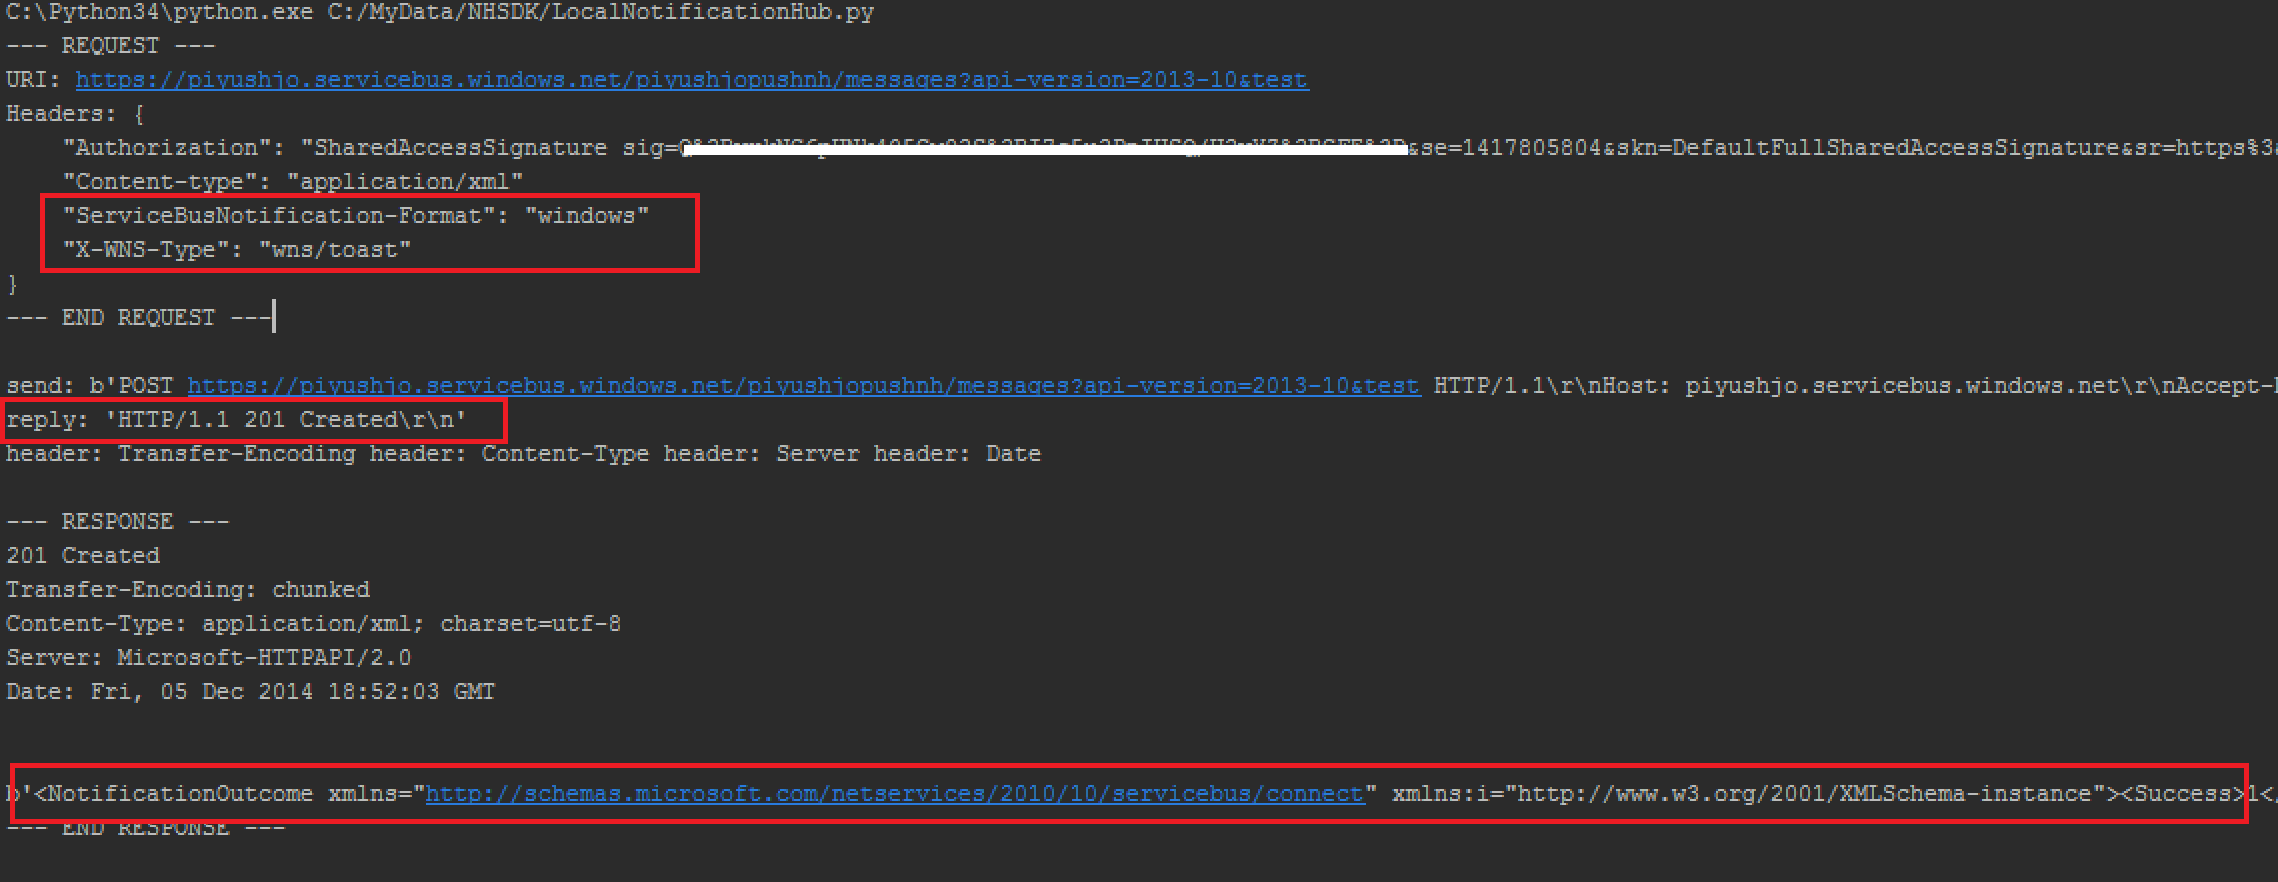 Снимок экрана: окно консоли, где красным цветом выделены подробные сведения о дампе запросов и ответов HTTP, а также сообщения с результатами уведомлений.